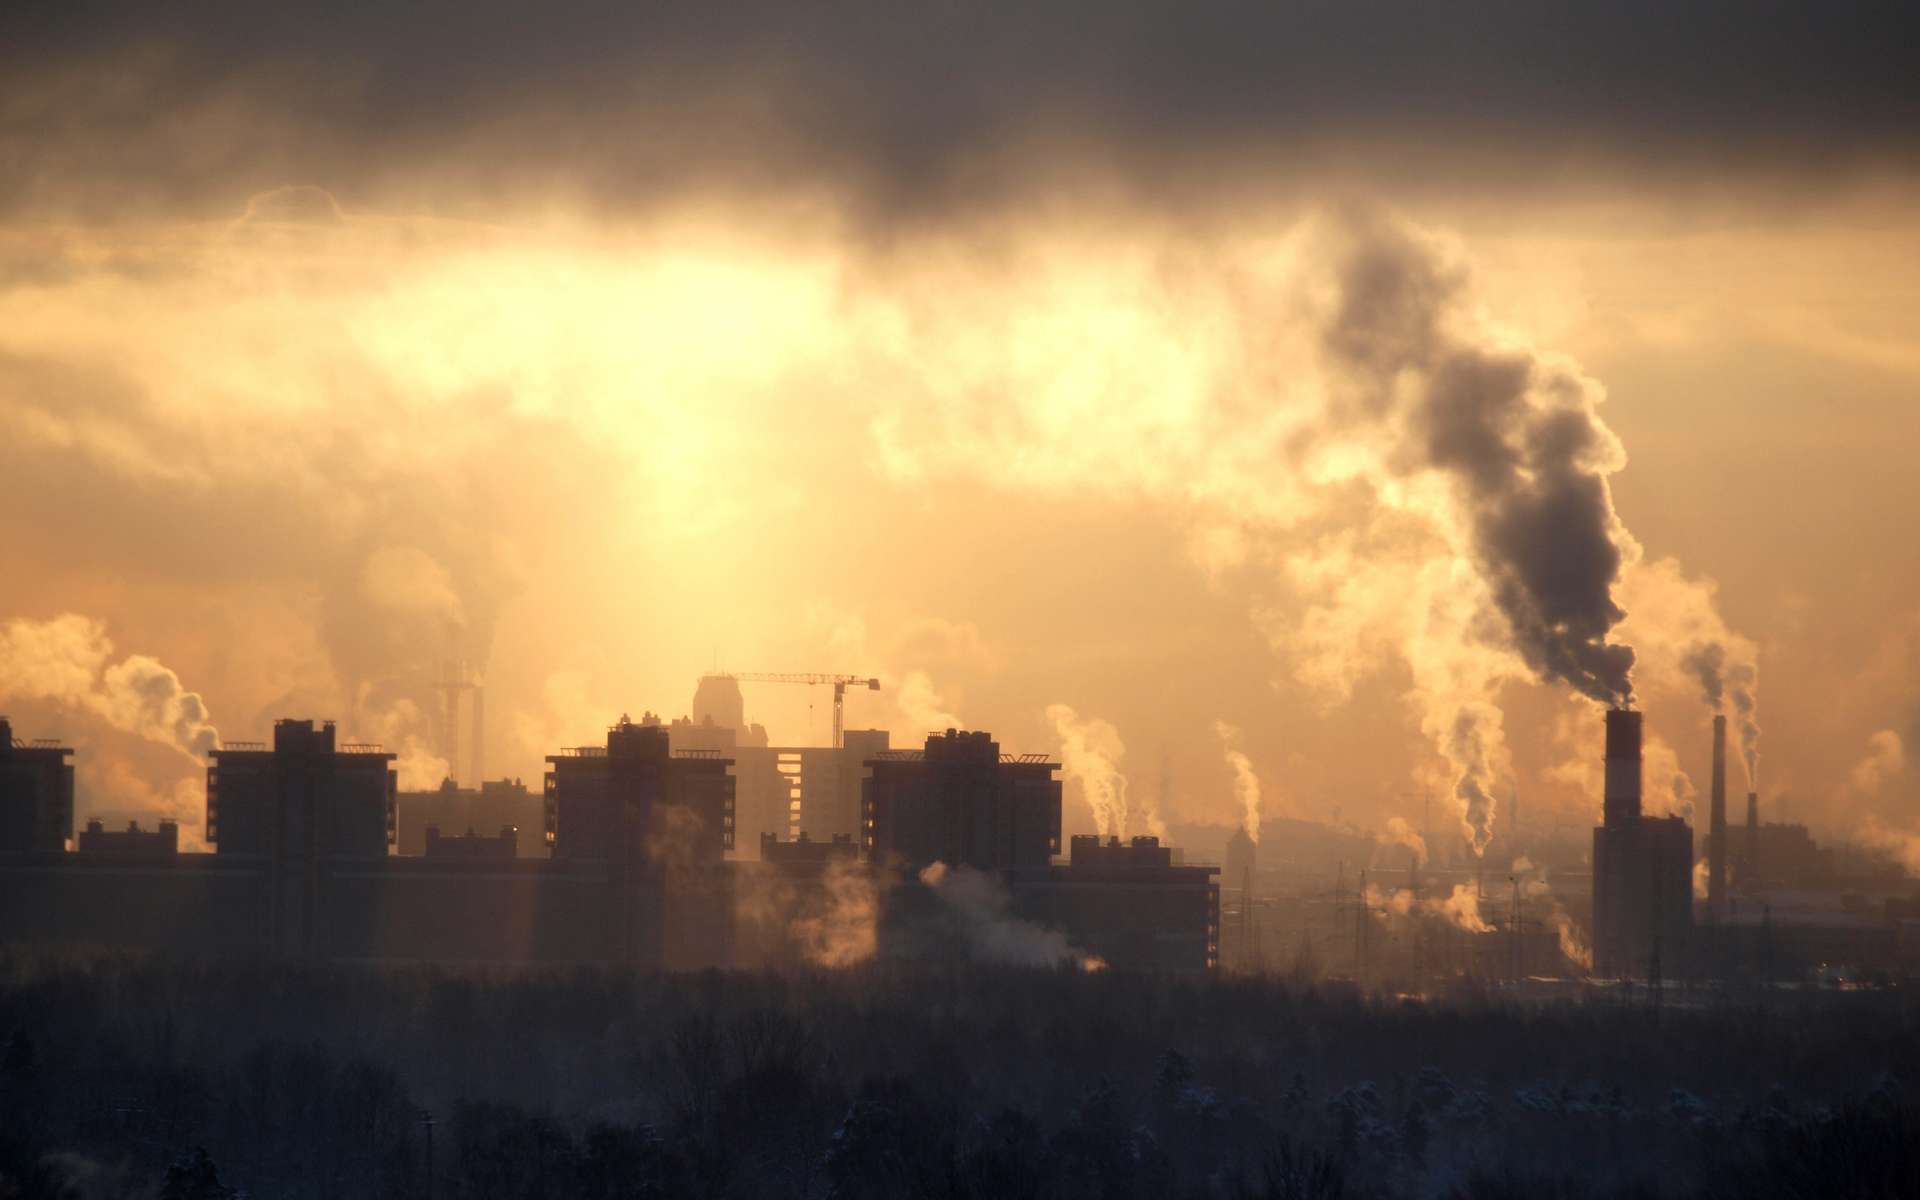 Des chercheurs allemands mettent en garde contre une « pandémie » sans équivalent due à la pollution de l’air. © Николай Григорьев, adobe Stock